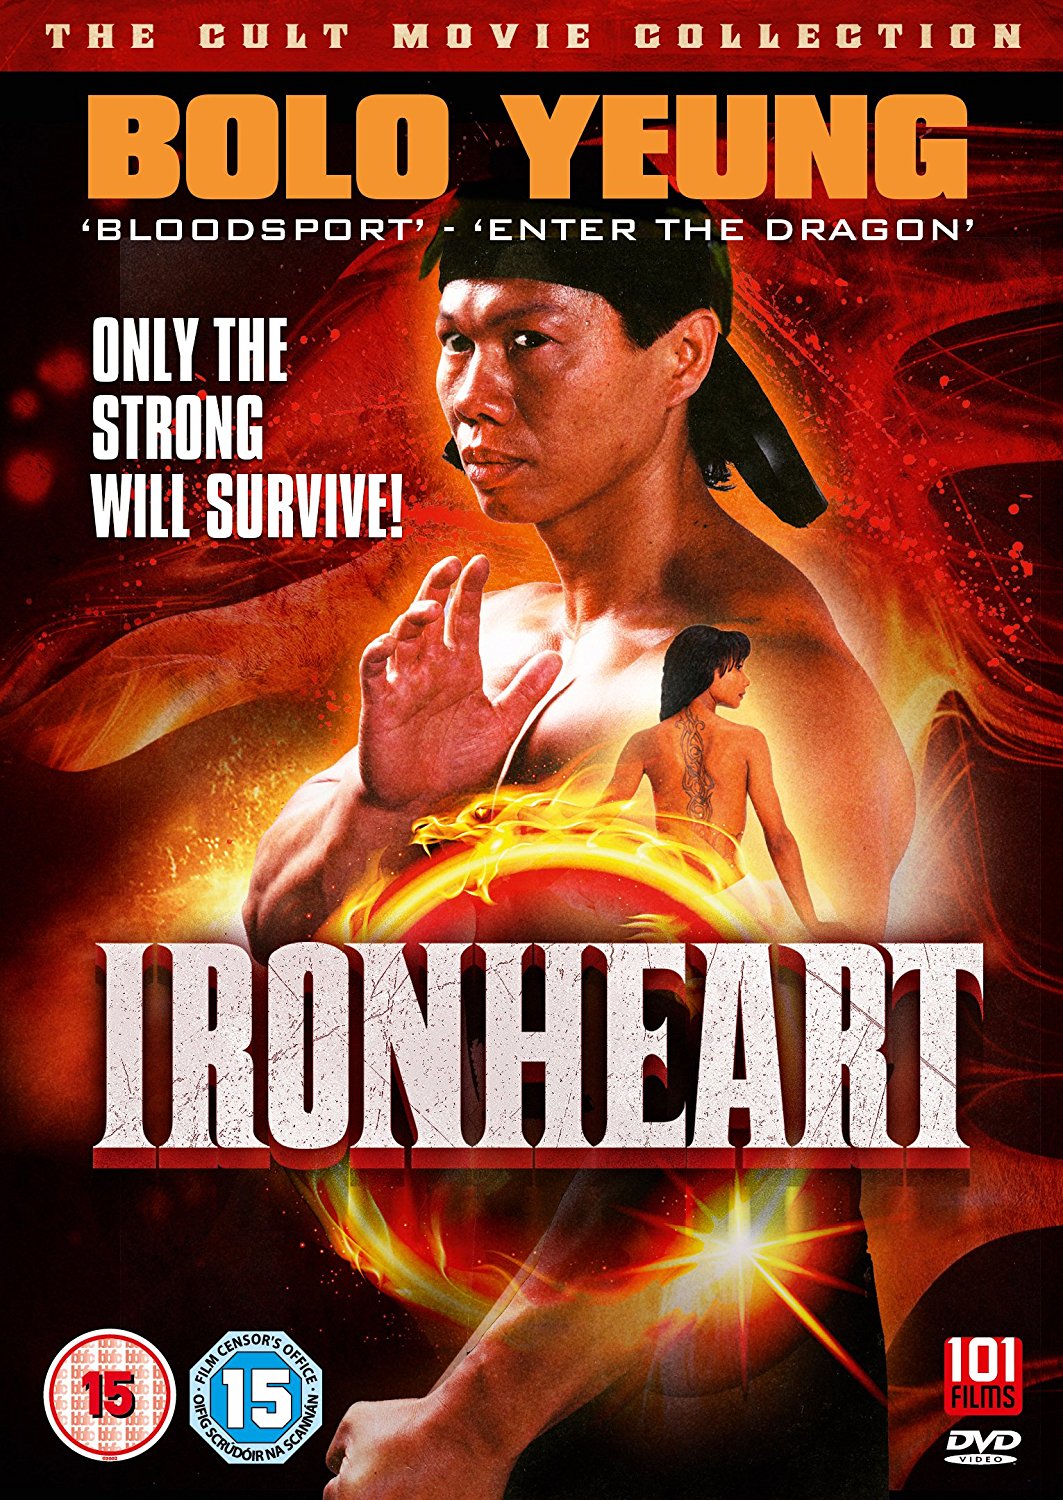 Ironheart (DVD)